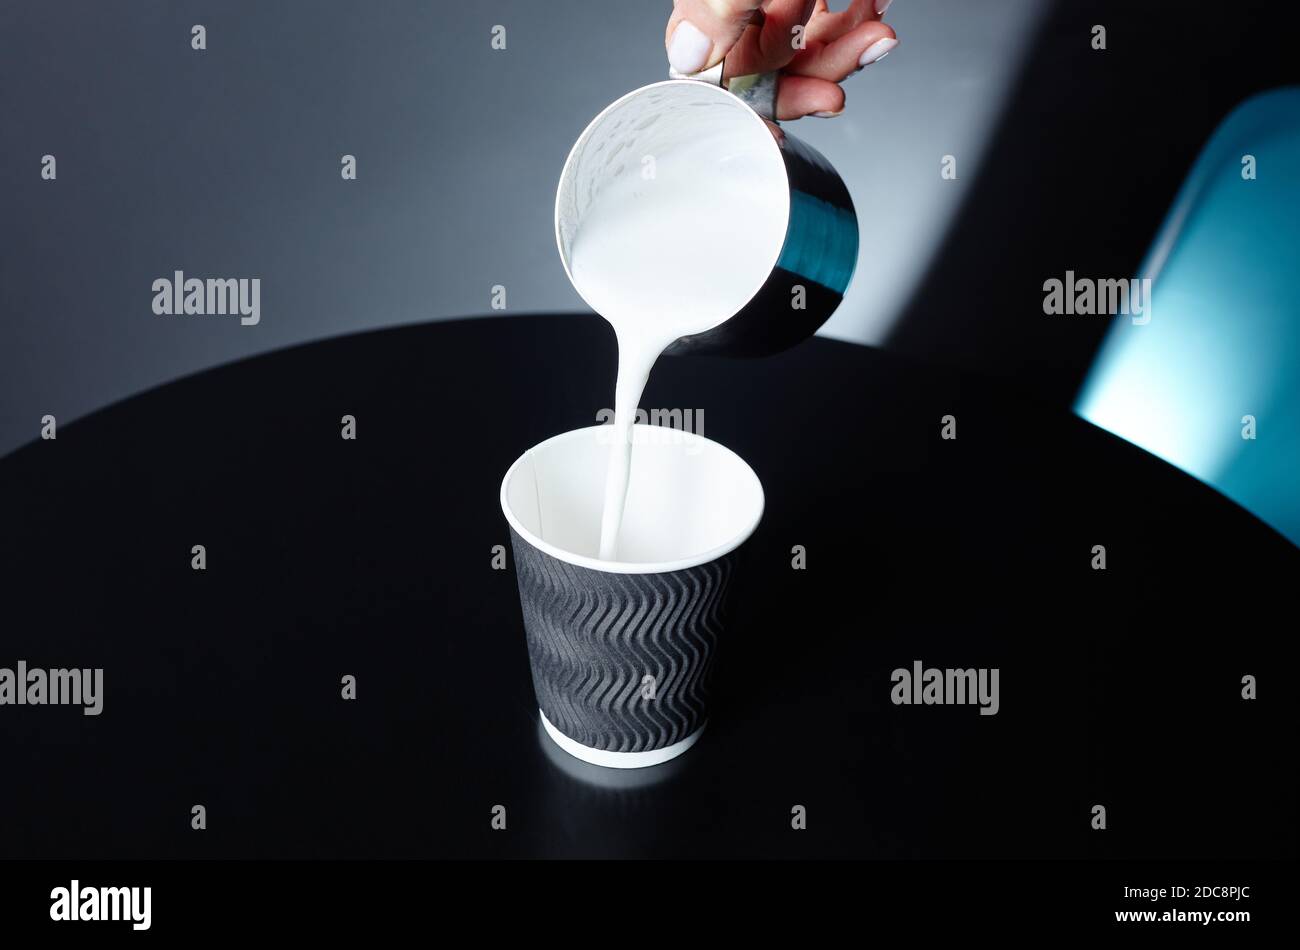 Le barista verse du lait dans une tasse en papier jetable sur une table en bois dans un café. Préparer une boisson savoureuse au lait. Une femme tient le pichet de lait en métal à la main Banque D'Images